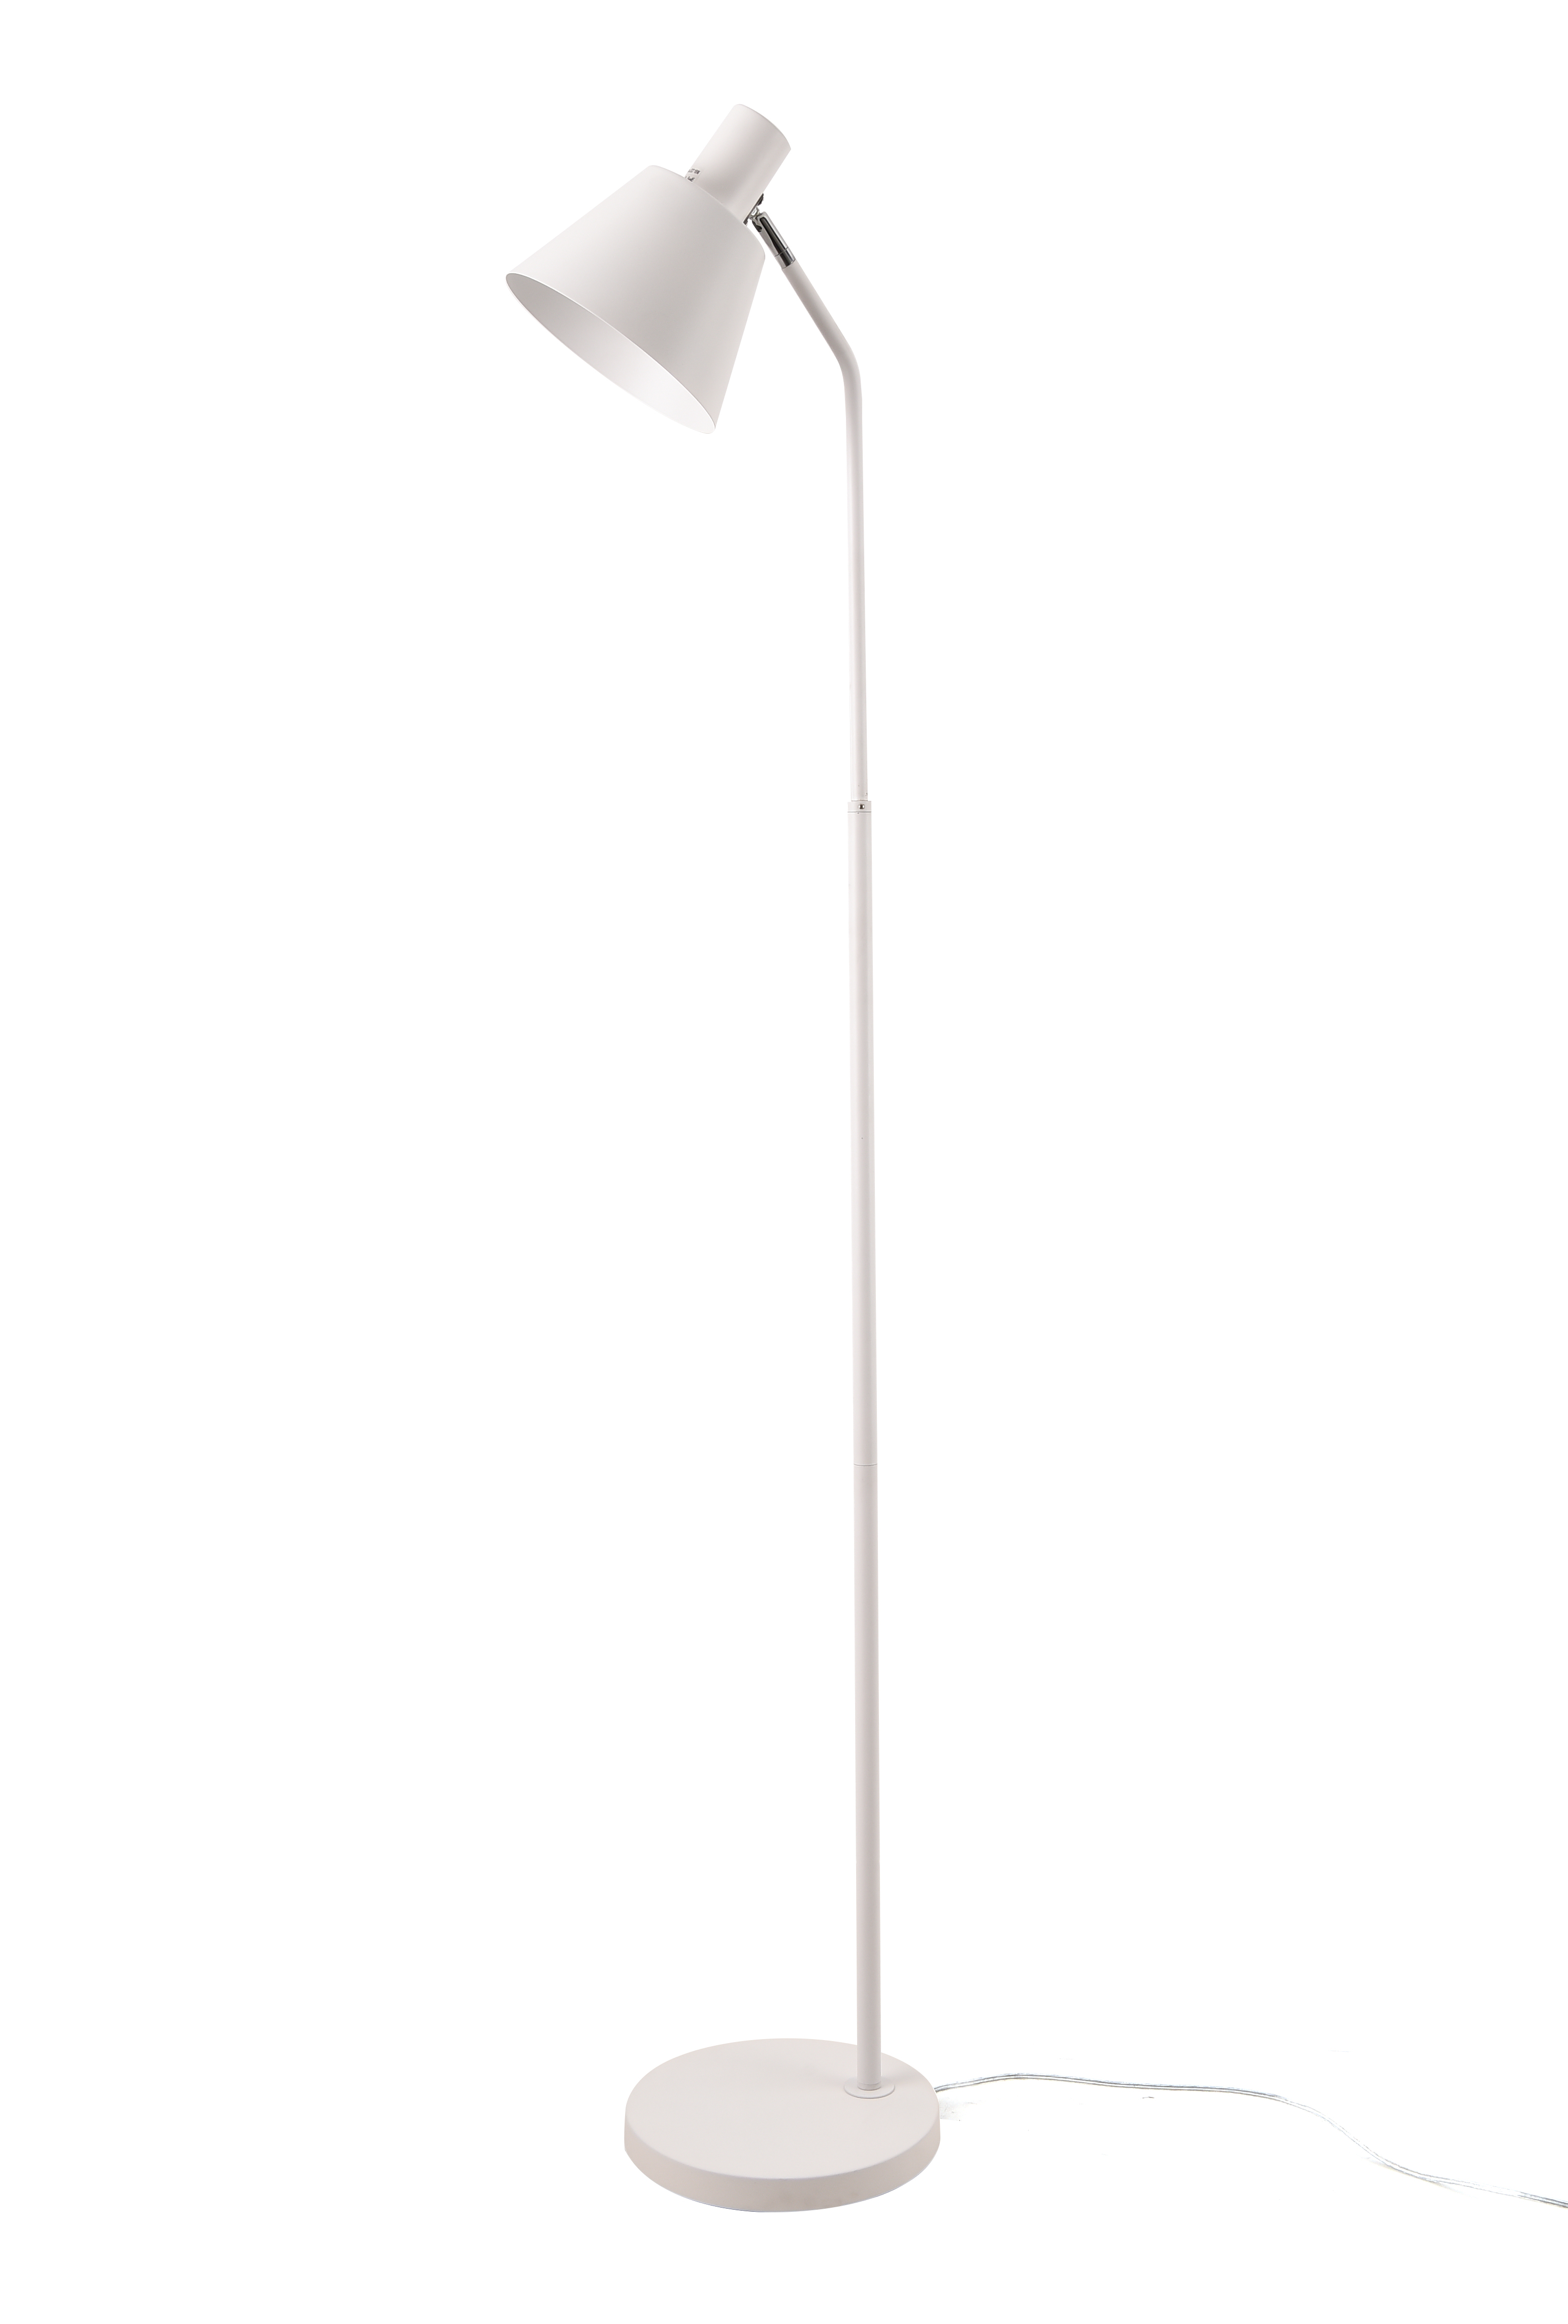 Lattiavalaisin FocusLight JODY 150cm, 1xE27 18W, valkoinen